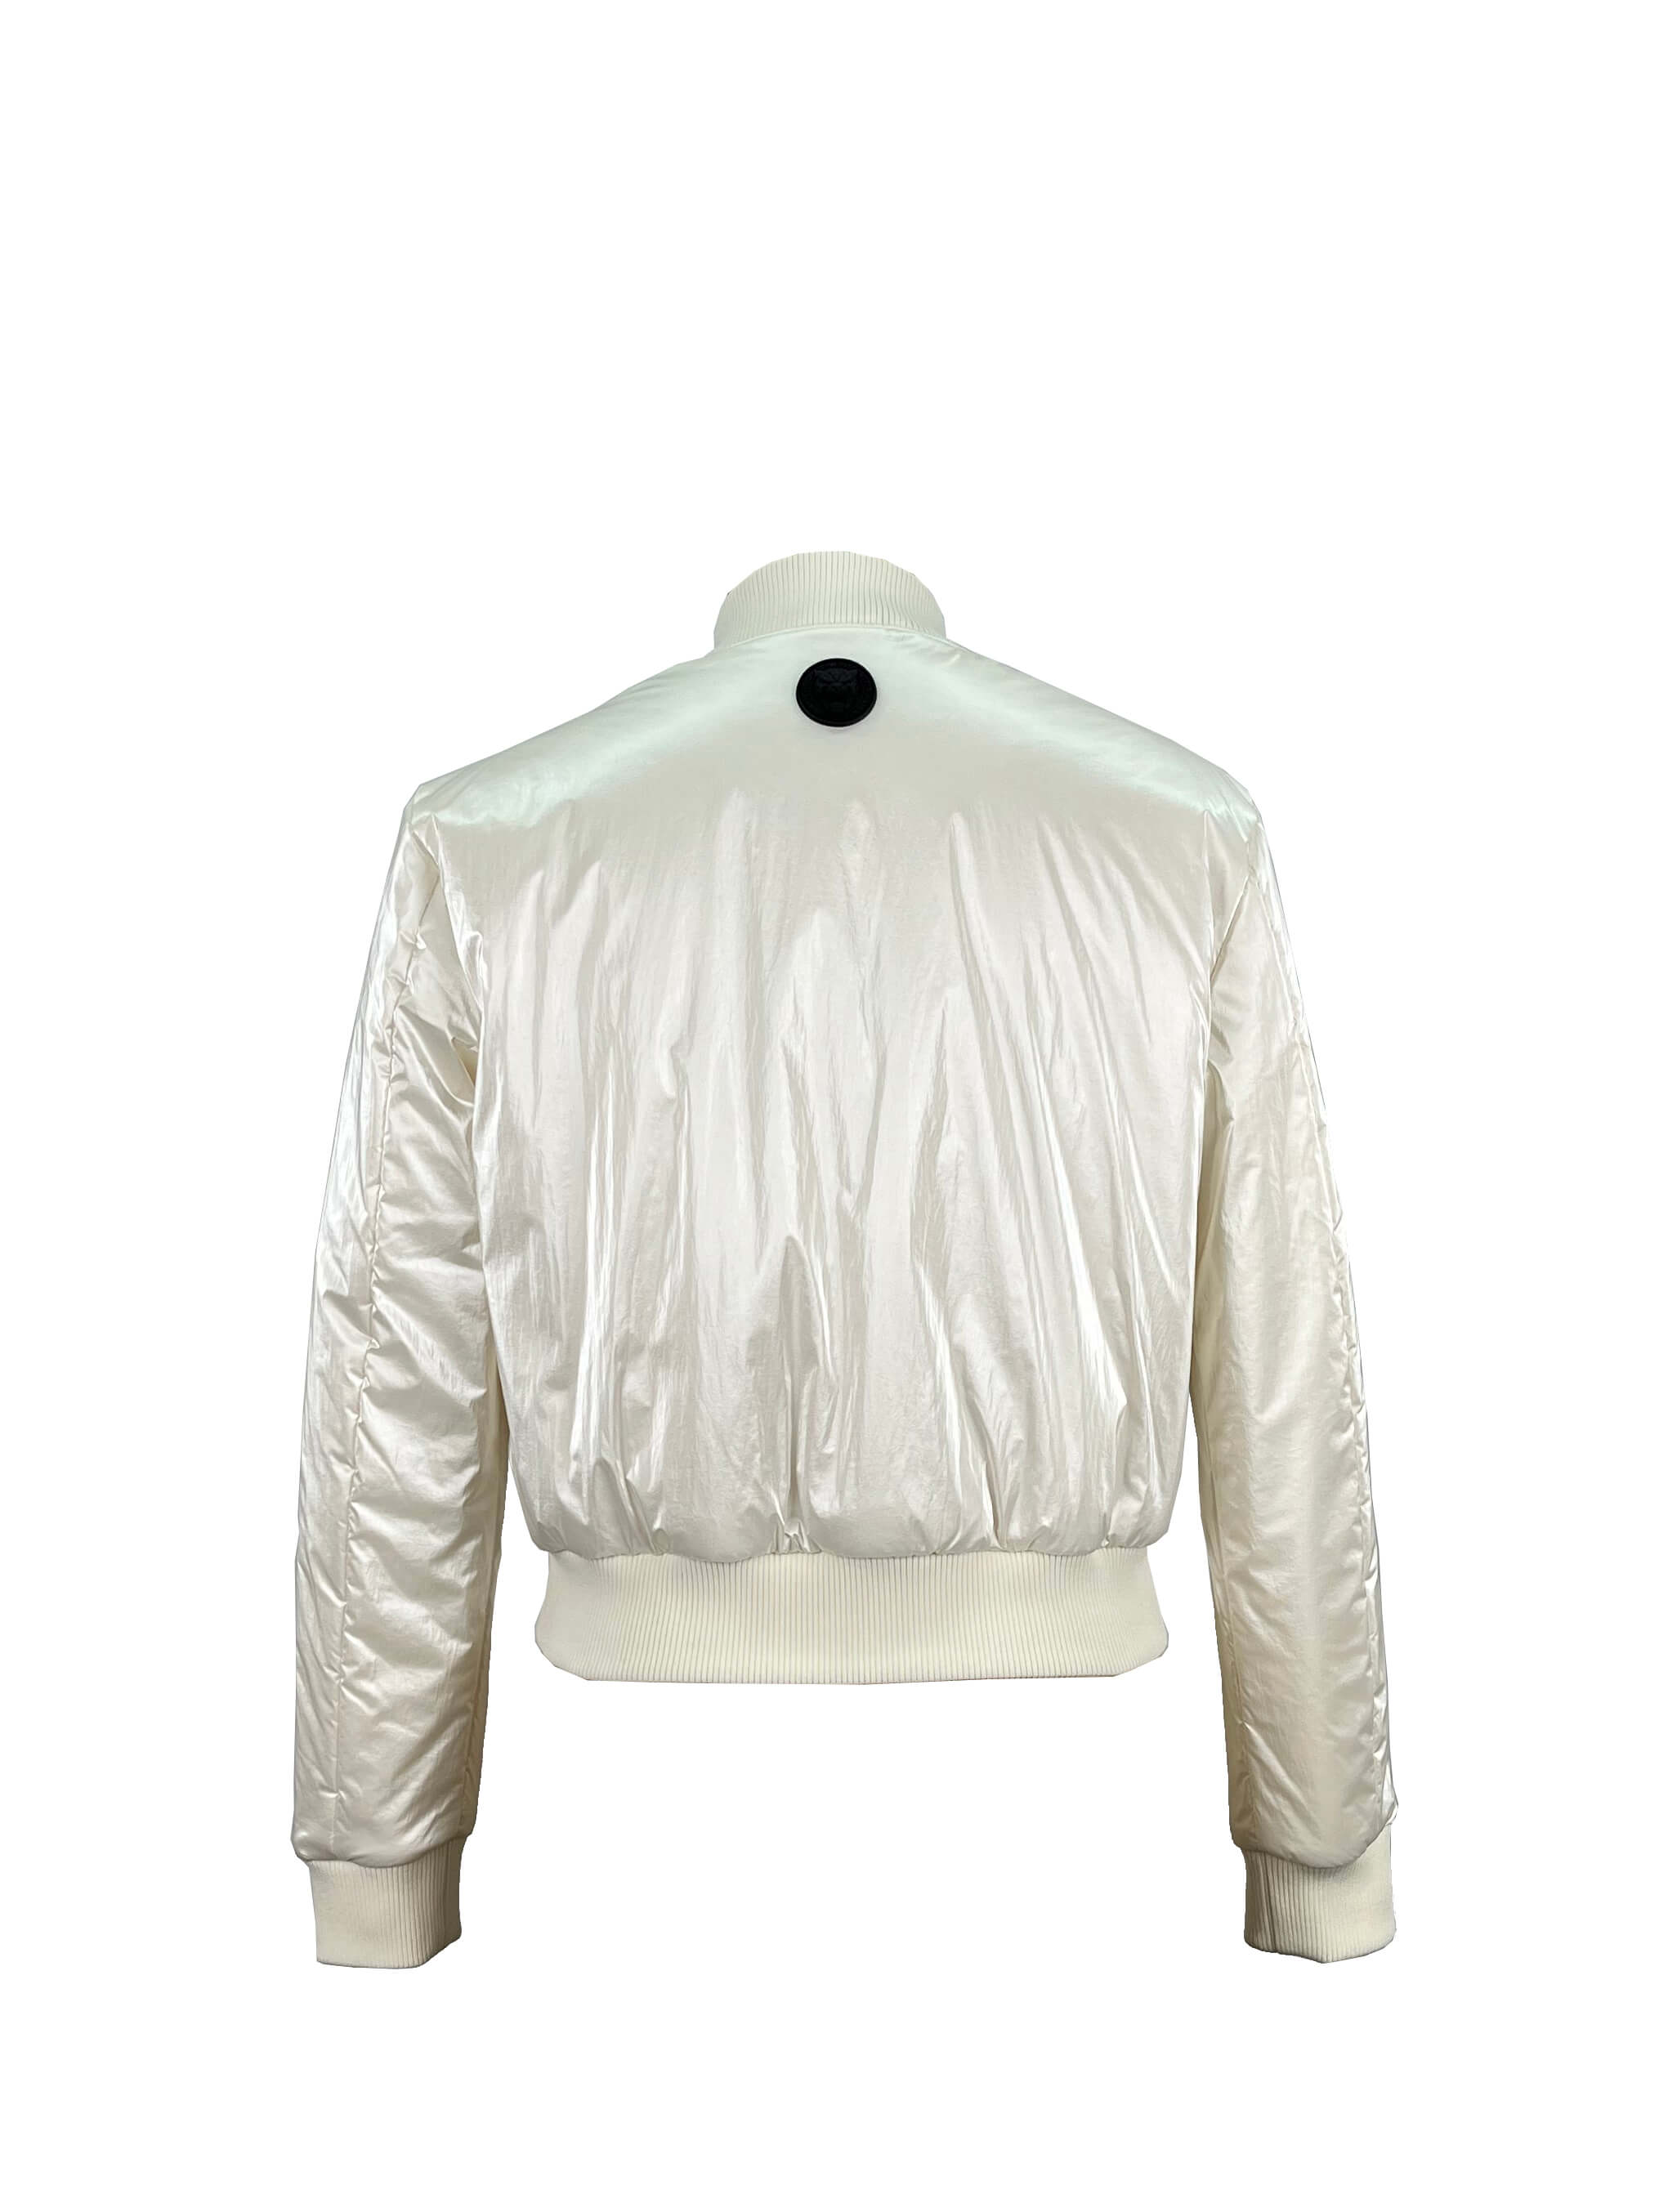 15.padded jacket (2)